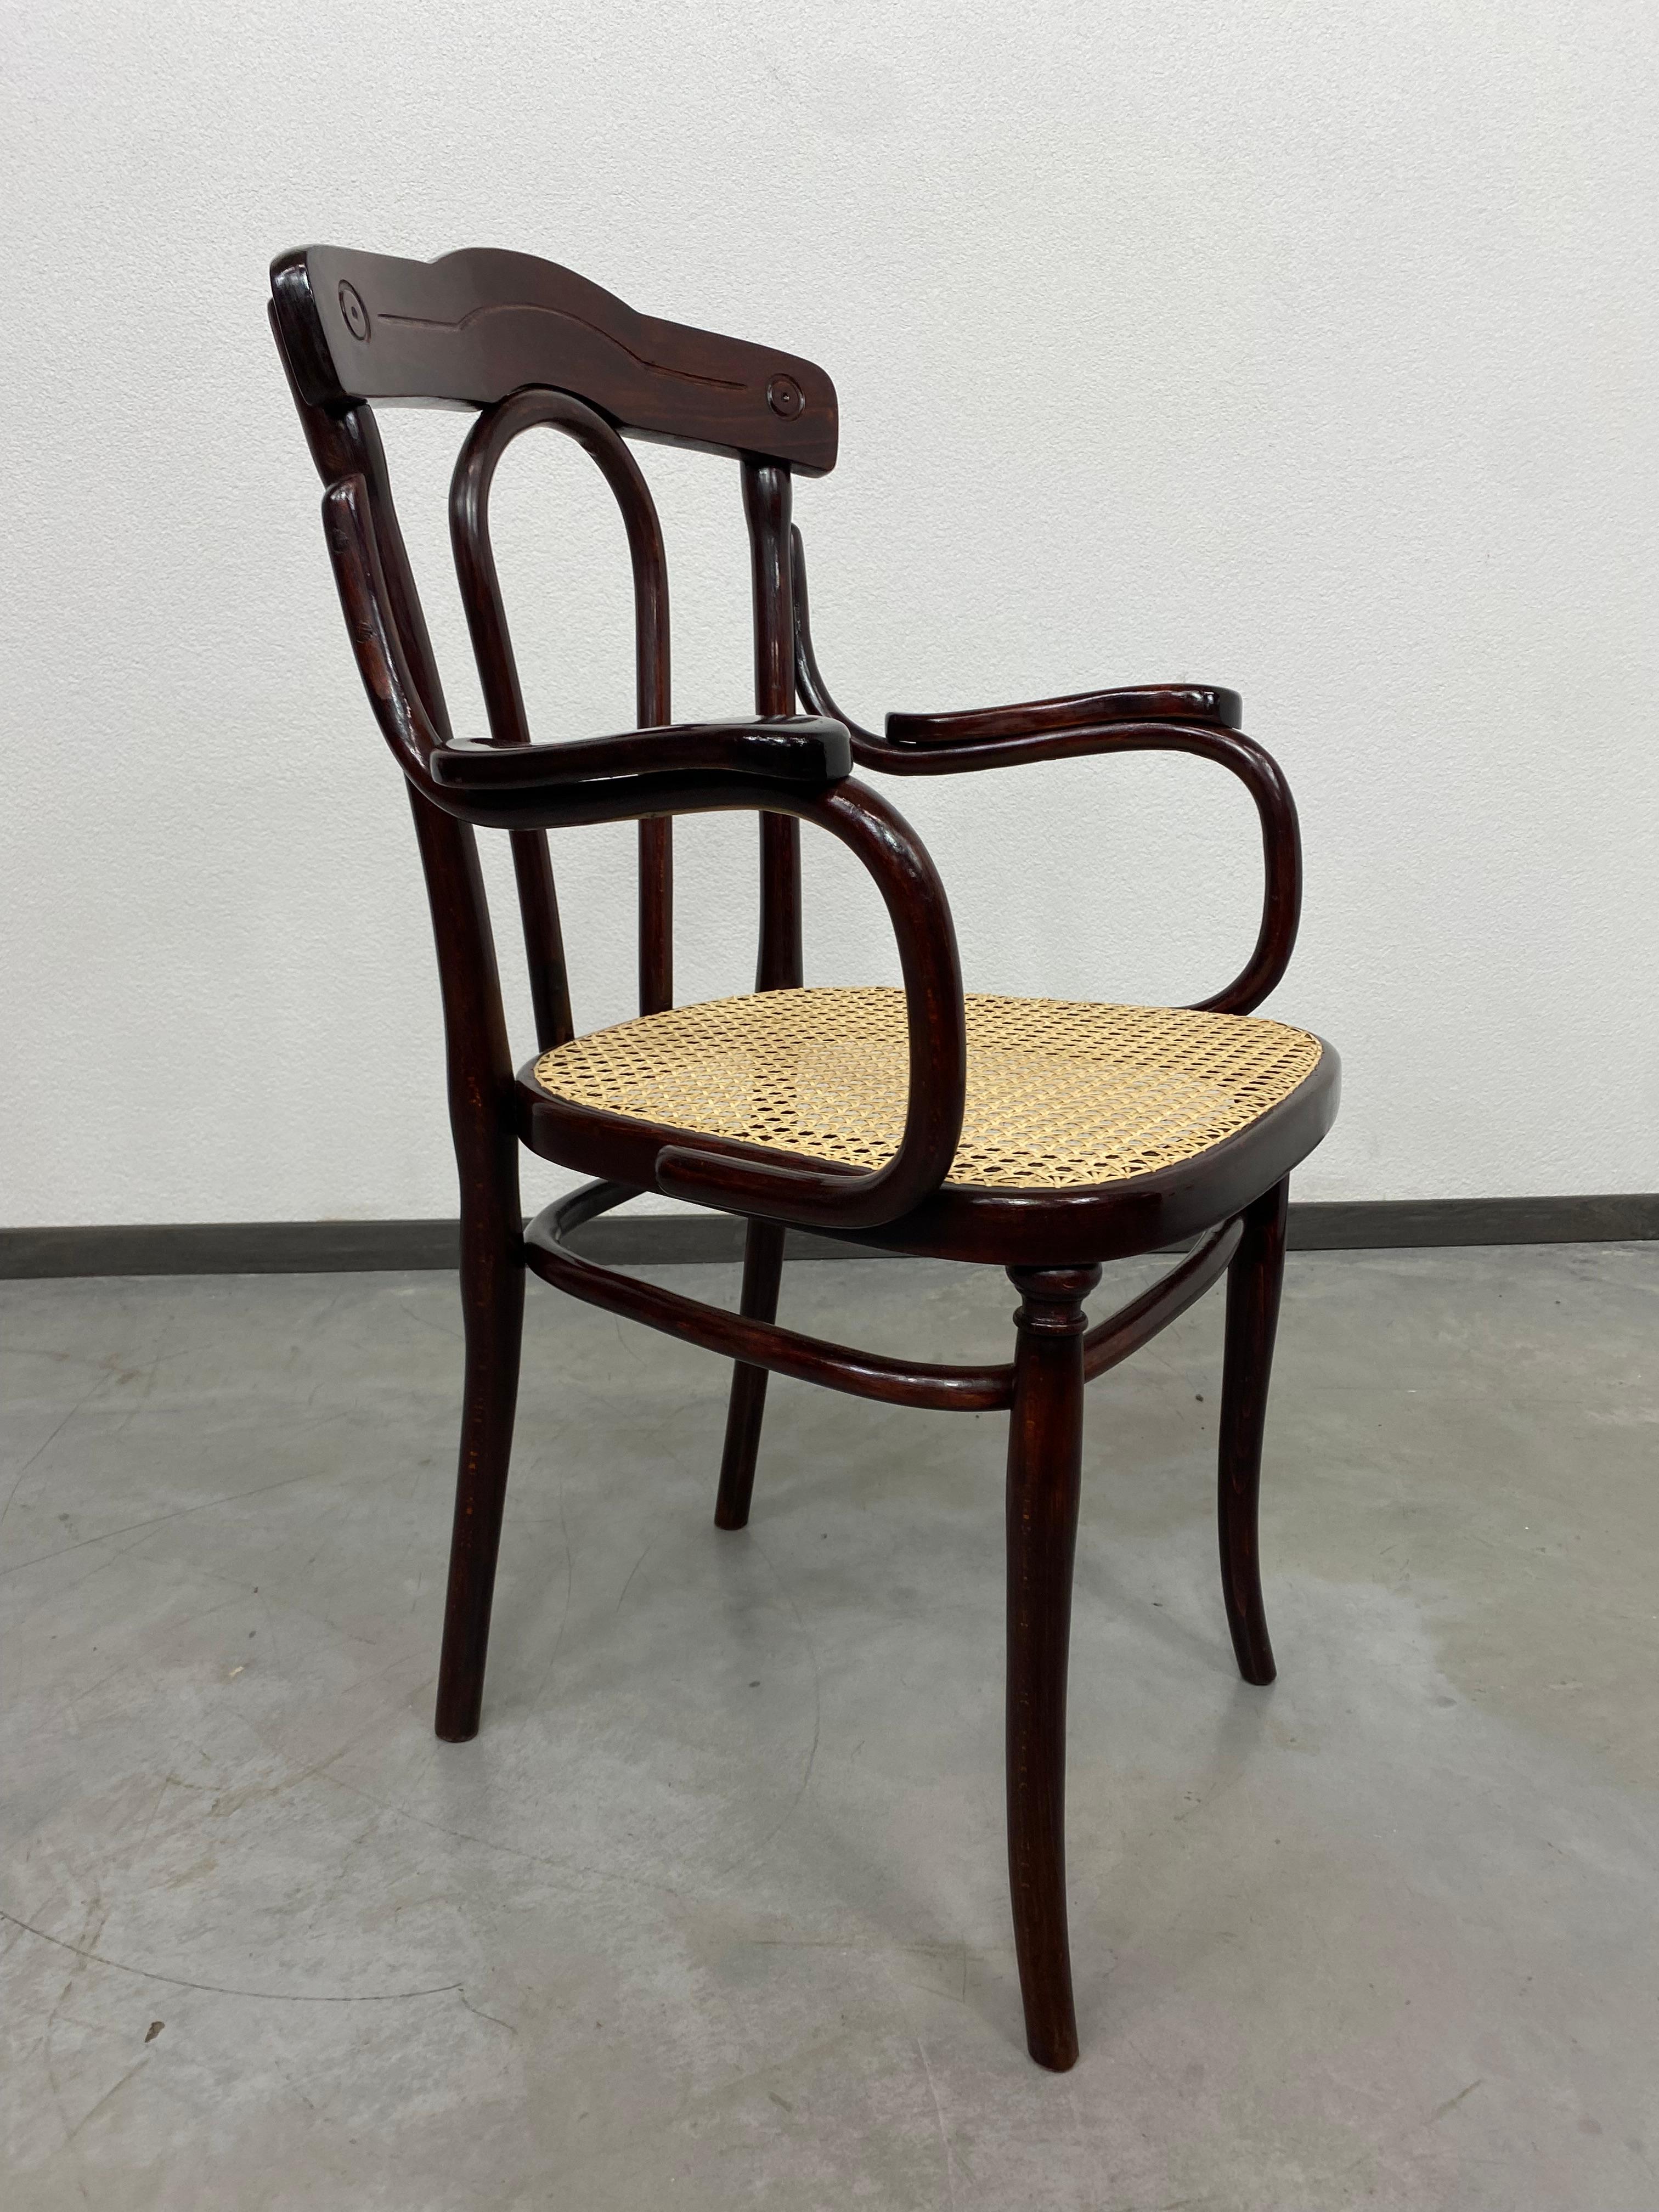 Chaise de bureau Thonet avec assise en rotin professionnellement teintée et repolie, nouvelle assise en rotin faite à la main.